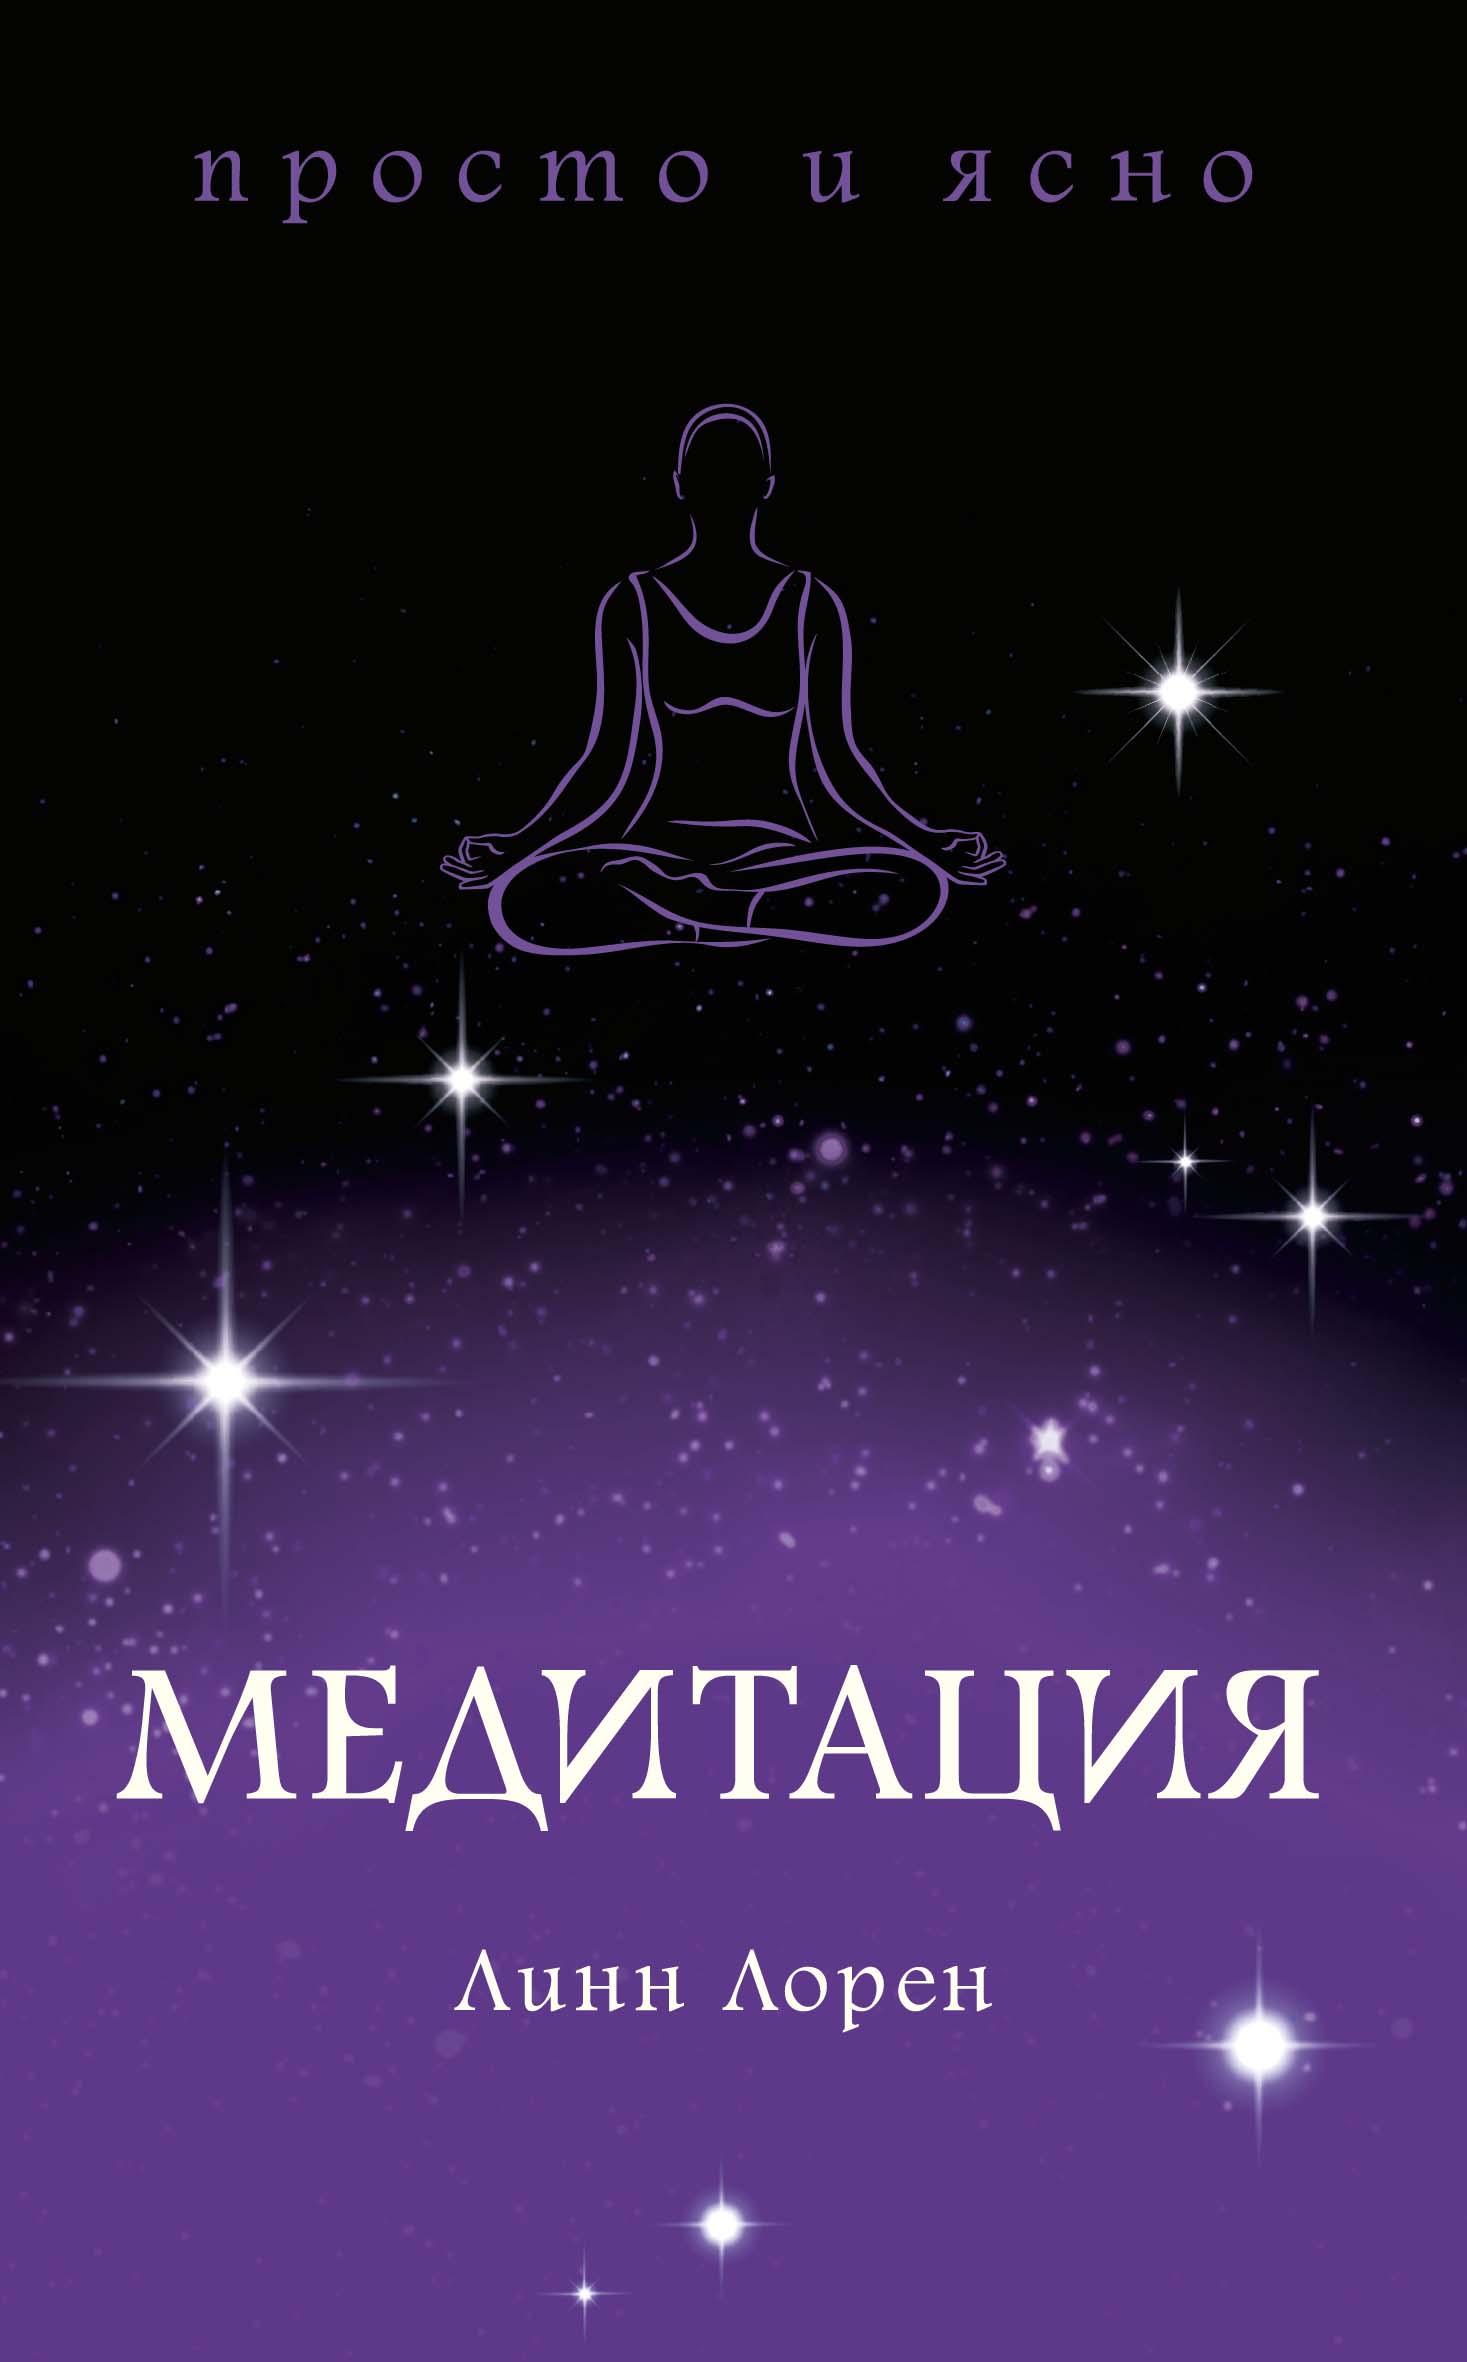 Медитация короткая медитация